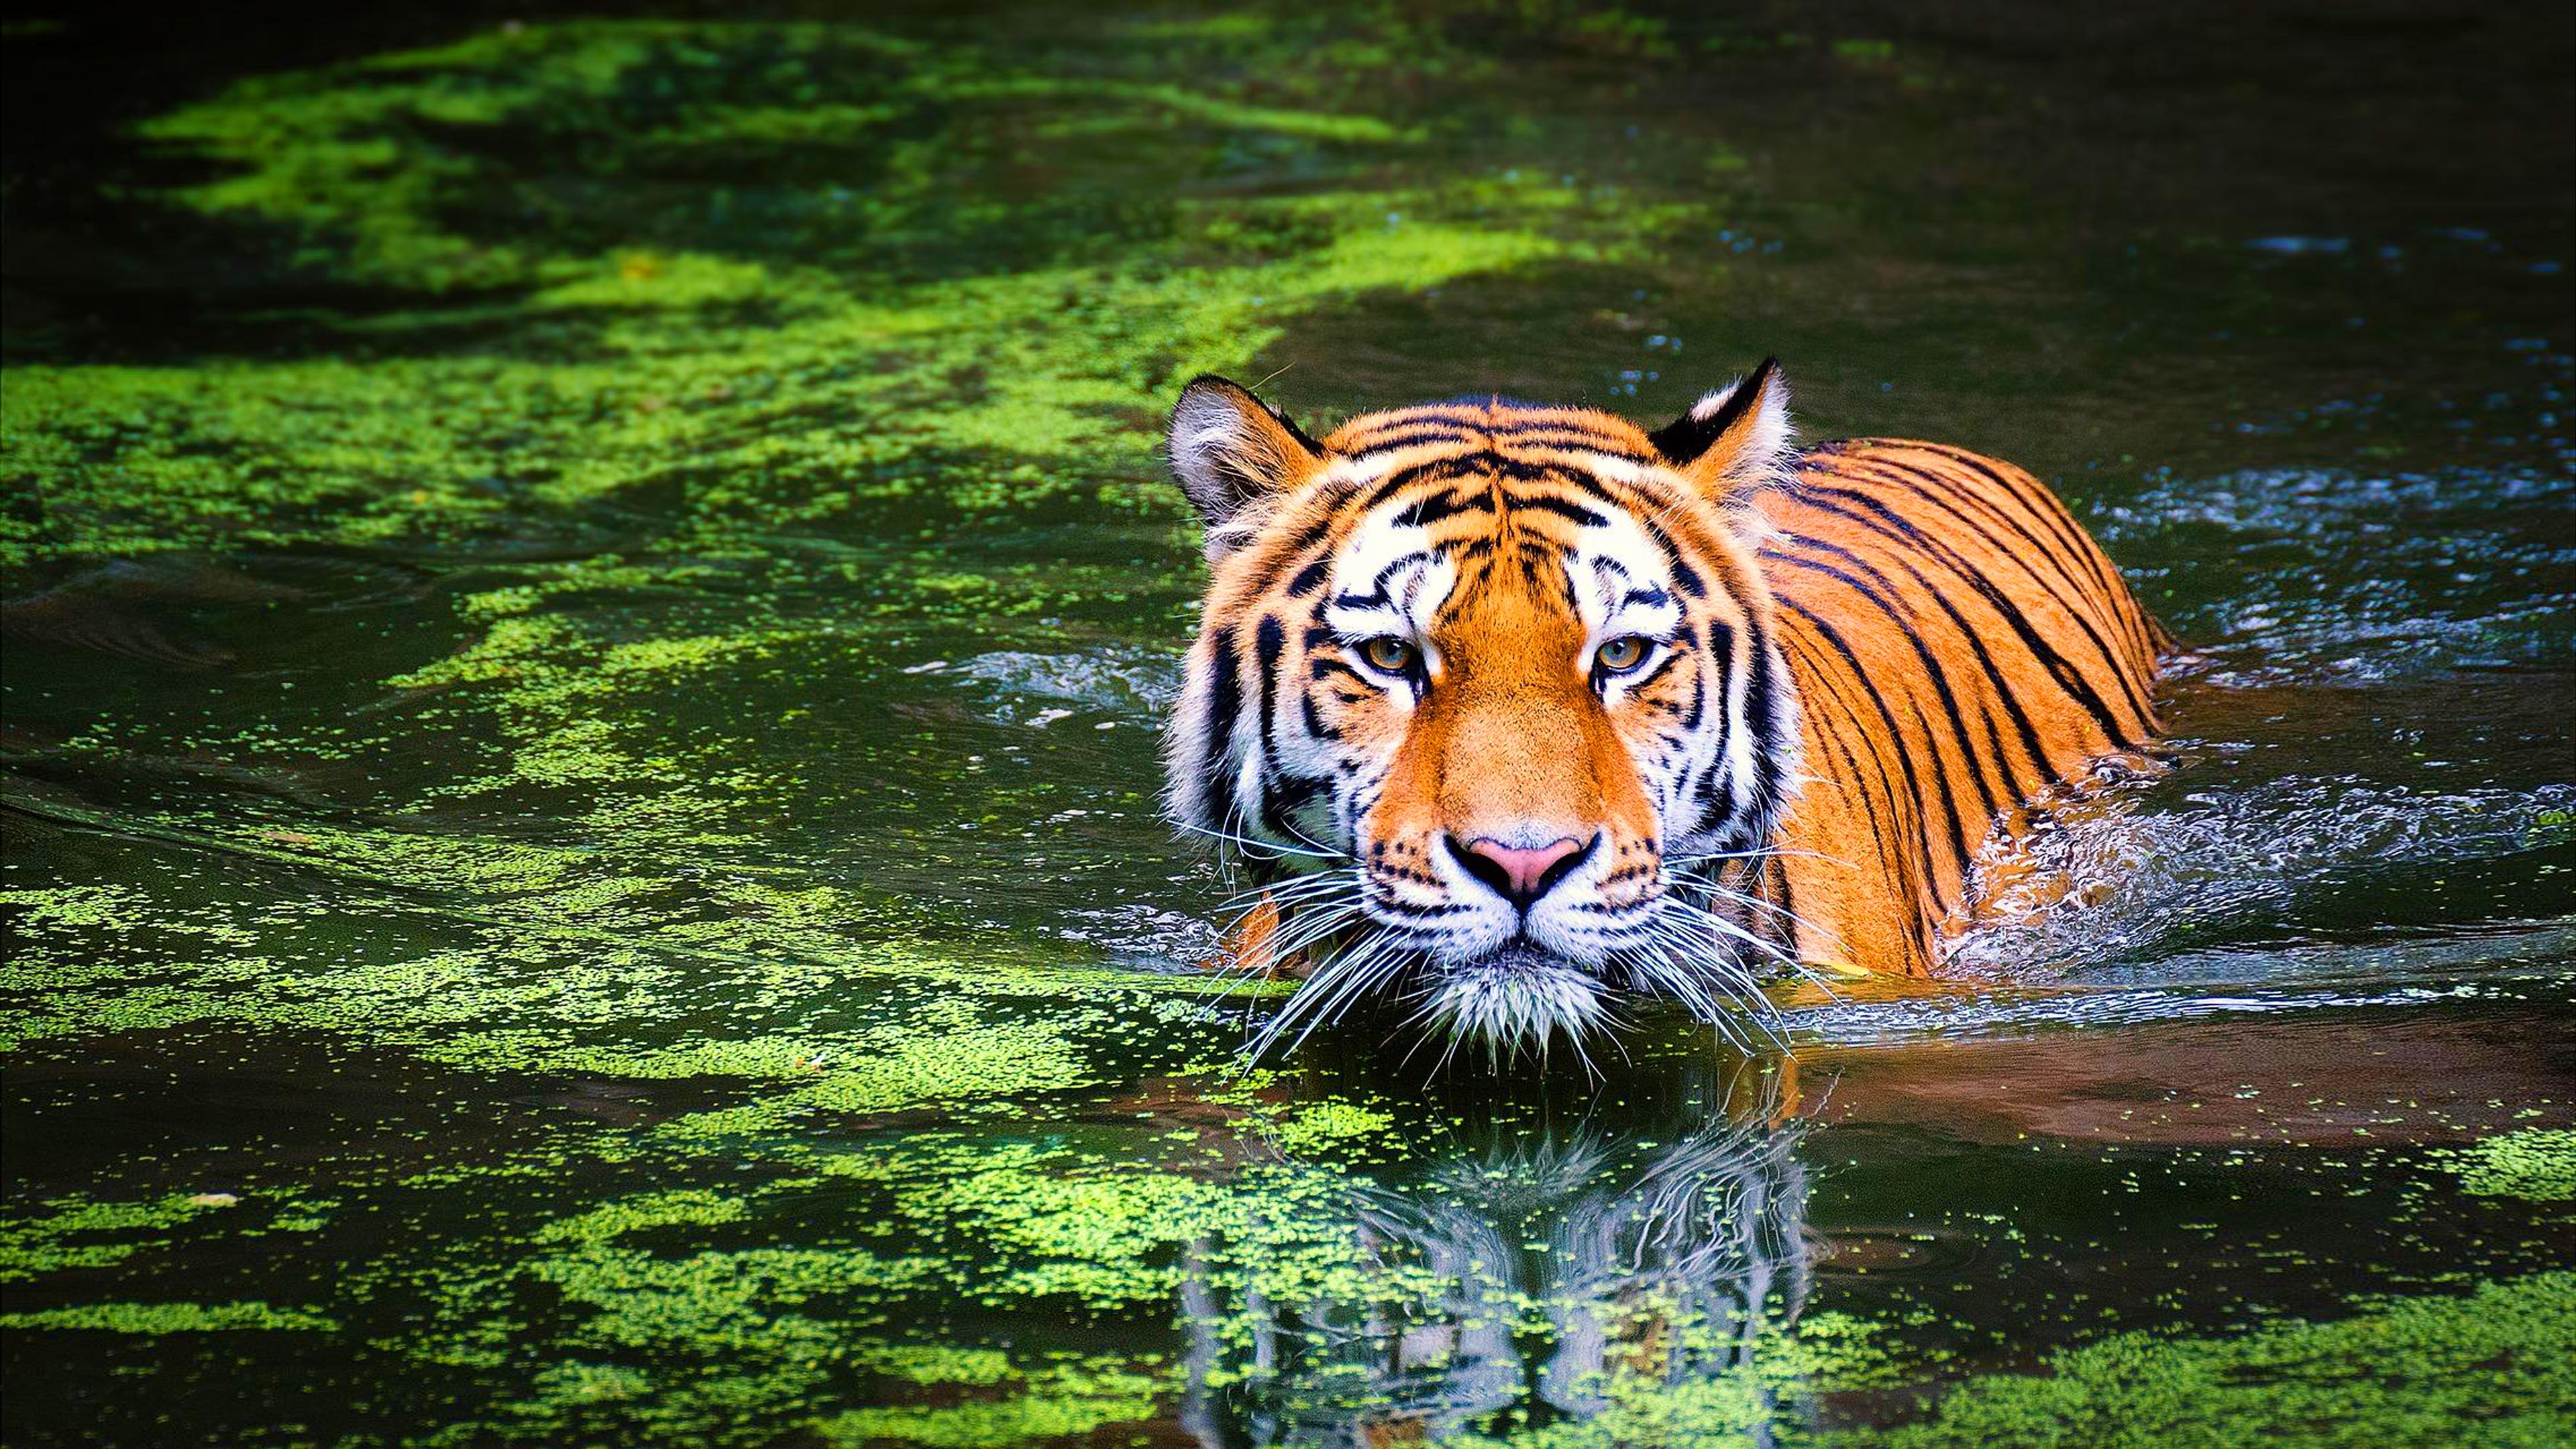 Hổ Bengal - một trong những loài động vật hung dữ nhất thế giới với sức mạnh phát triển của cơ thể và tính cách khó lường. Bạn có thể sử dụng hình nền động vật Hổ Bengal bơi lội 4K Ultra HD để làm màn hình máy tính của bạn trở nên thú vị và hấp dẫn hơn. Khi xem các bức tranh này, bạn sẽ có cảm giác như đang ngắm nhìn Hổ Bengal xuất hiện trước mắt mình!